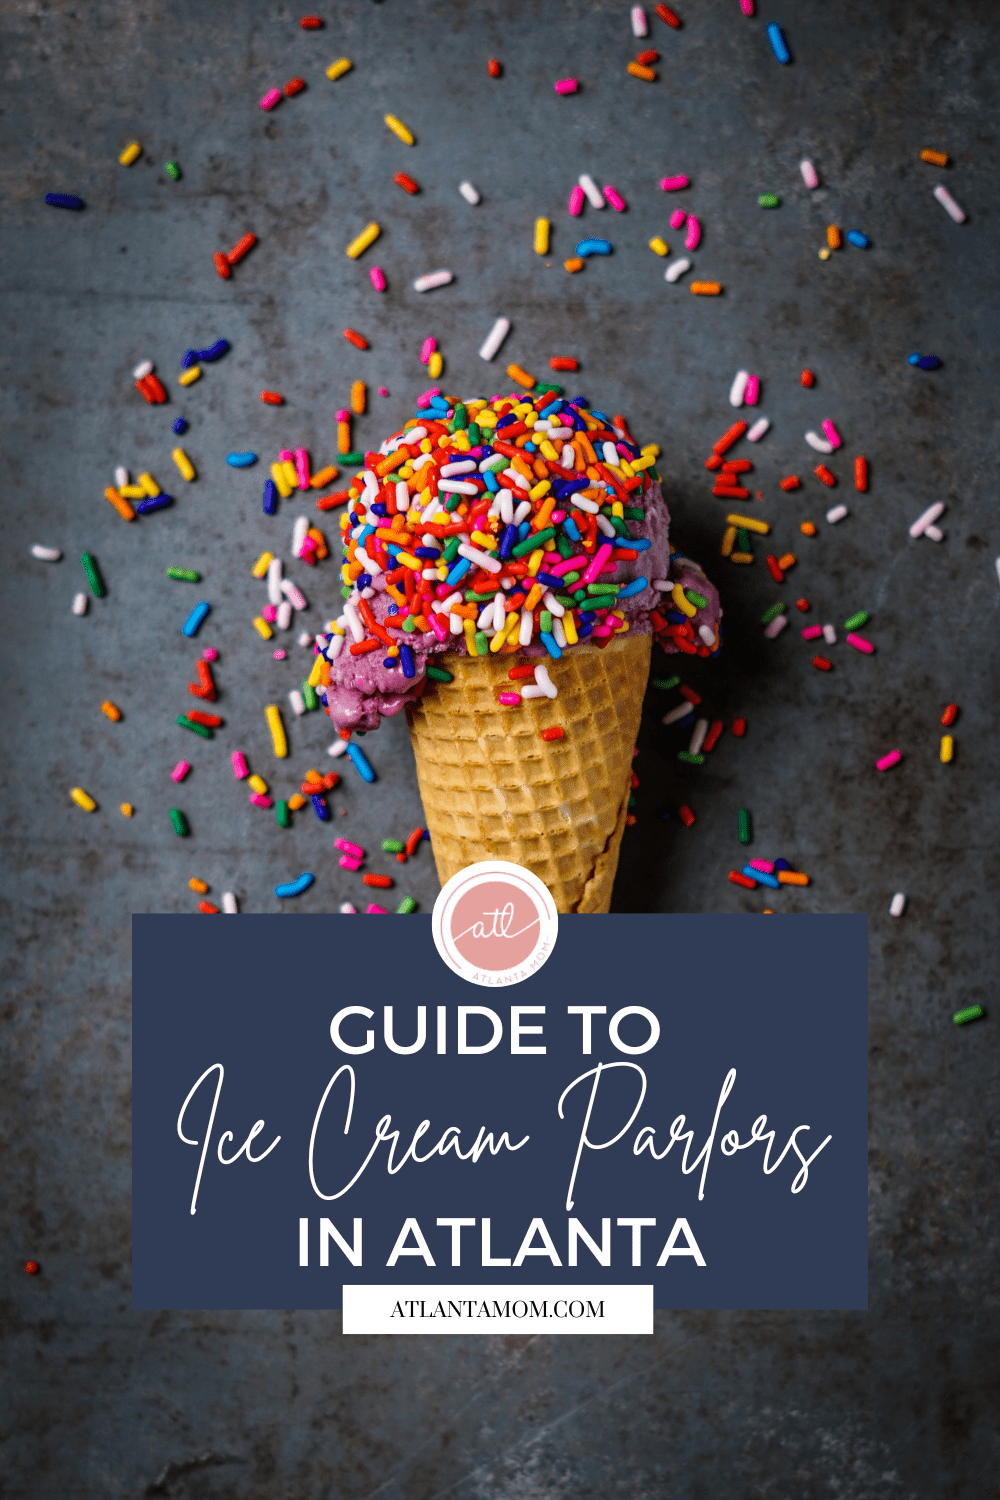 A Guide to Atlanta’s Favorite Ice Cream Spots